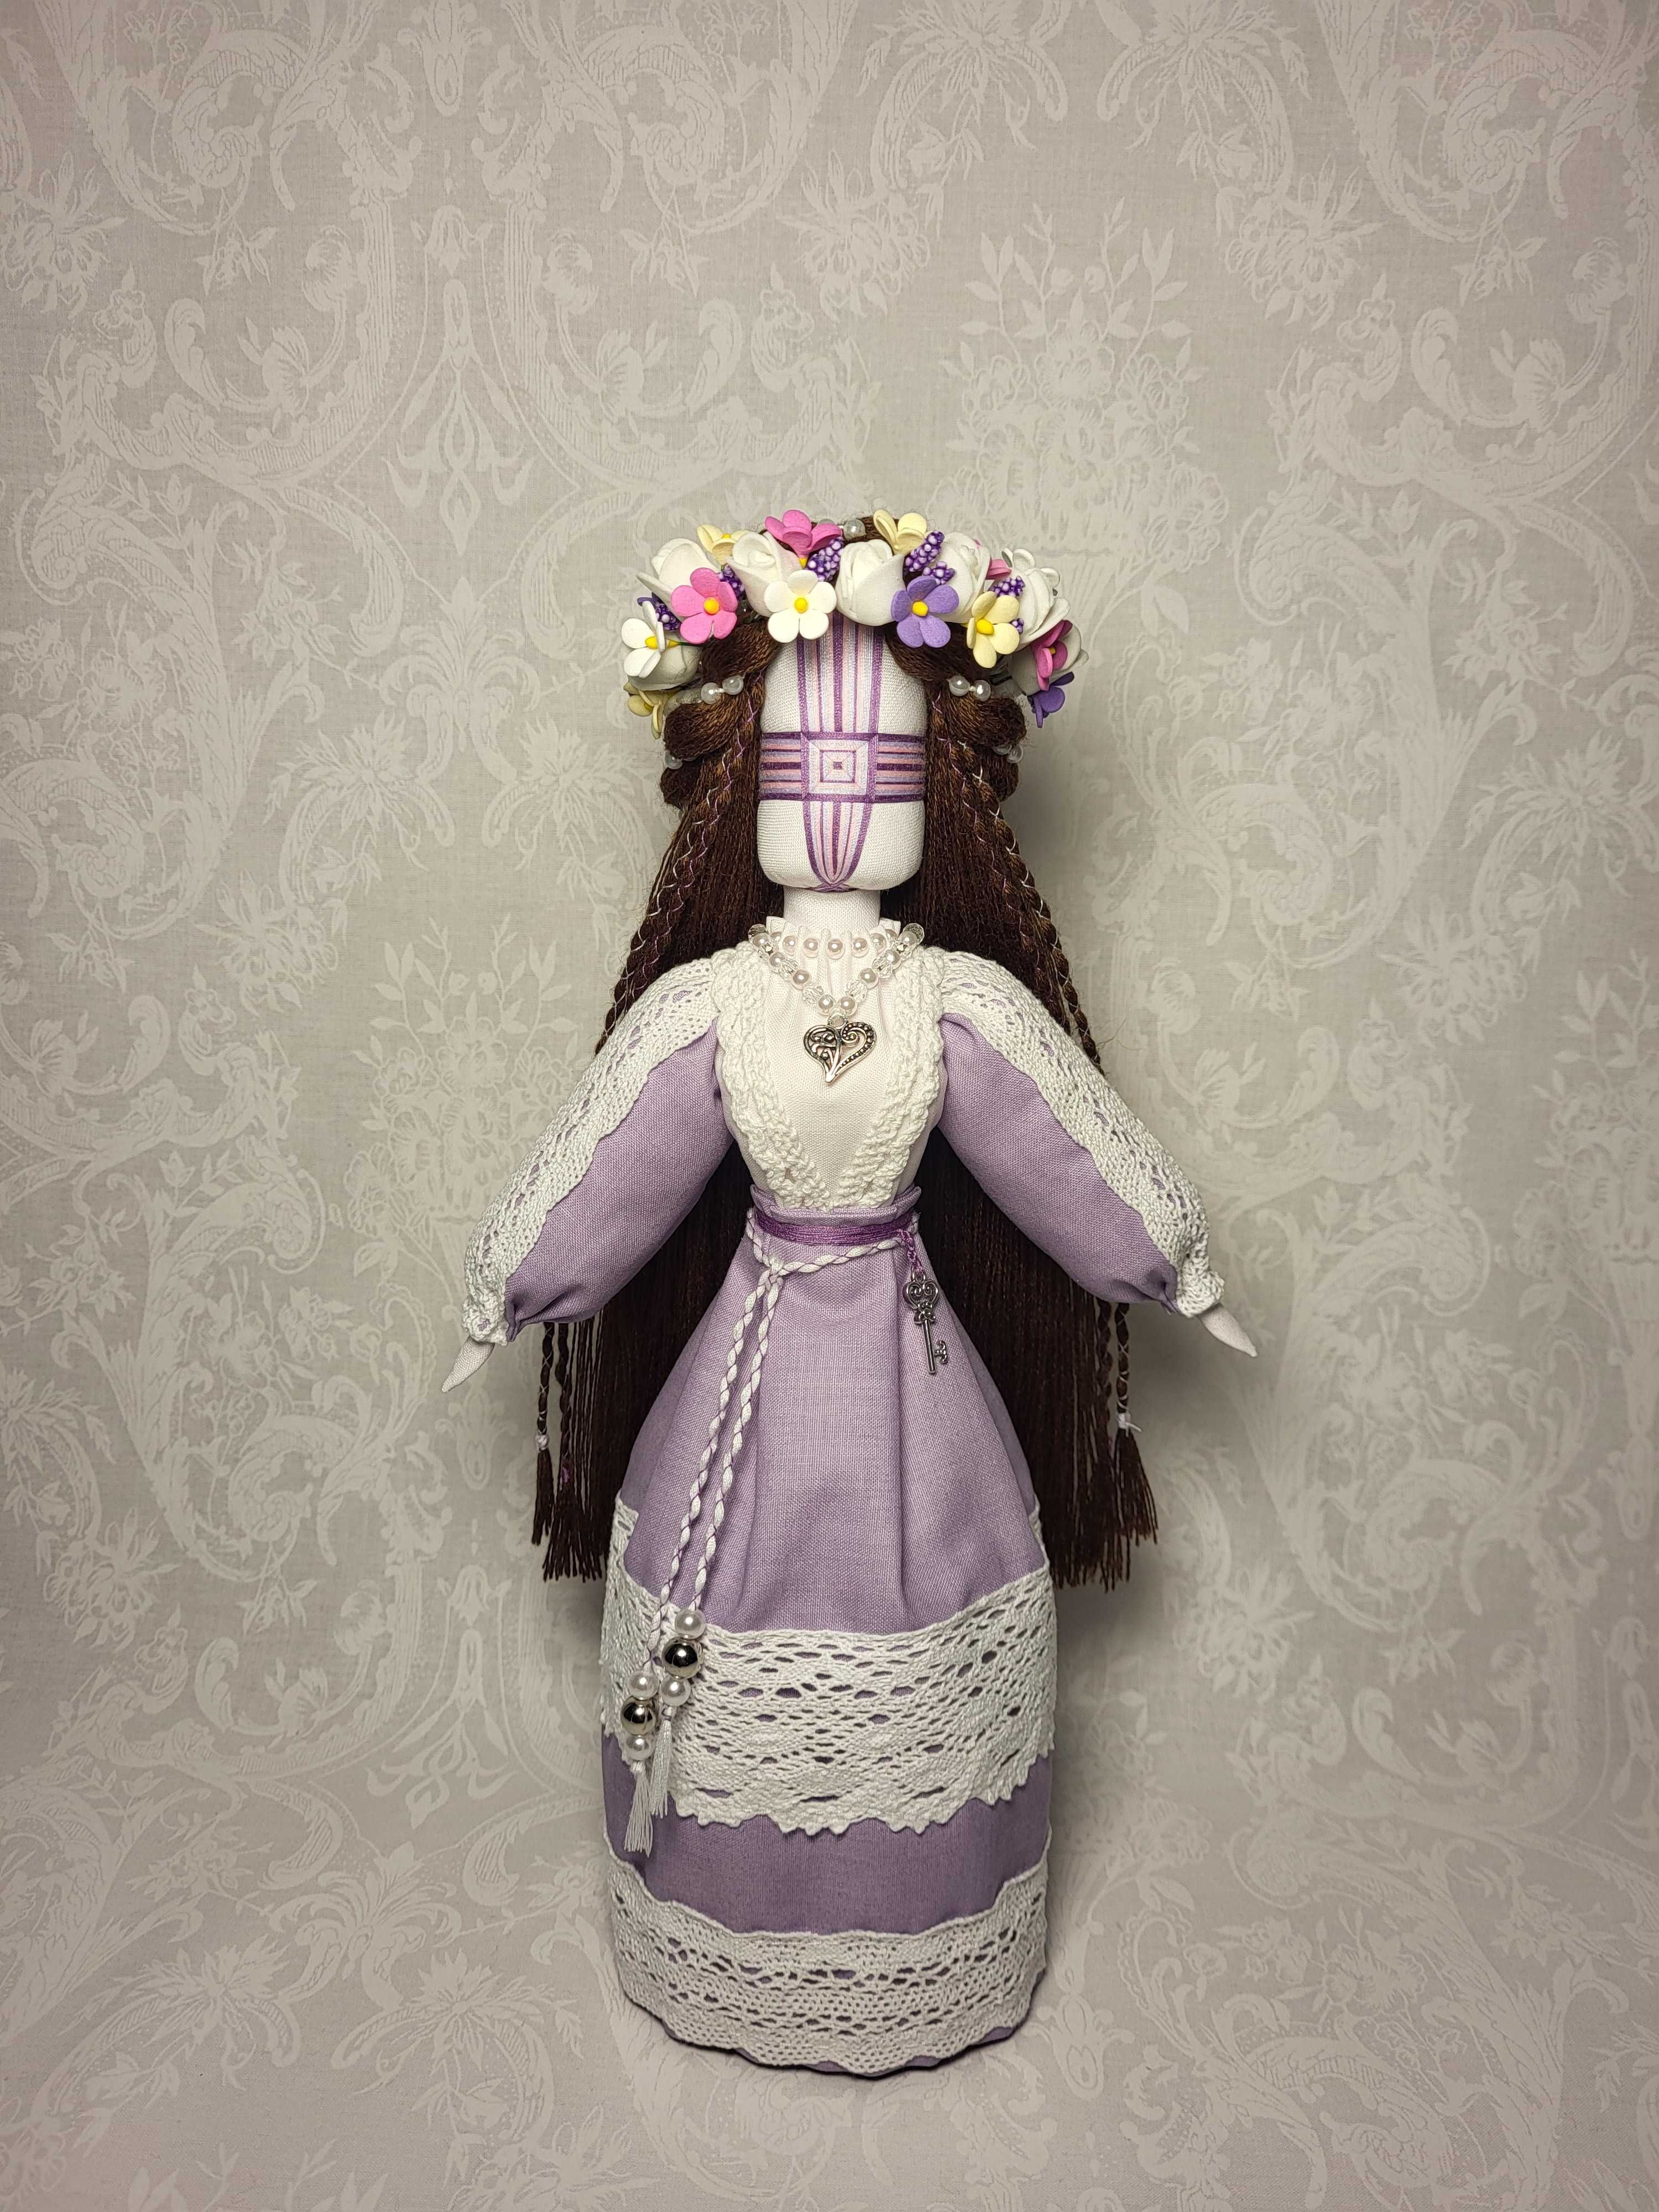 МОТАНКА, авторська українська лялька, ручна робота, оберіг, подарунок